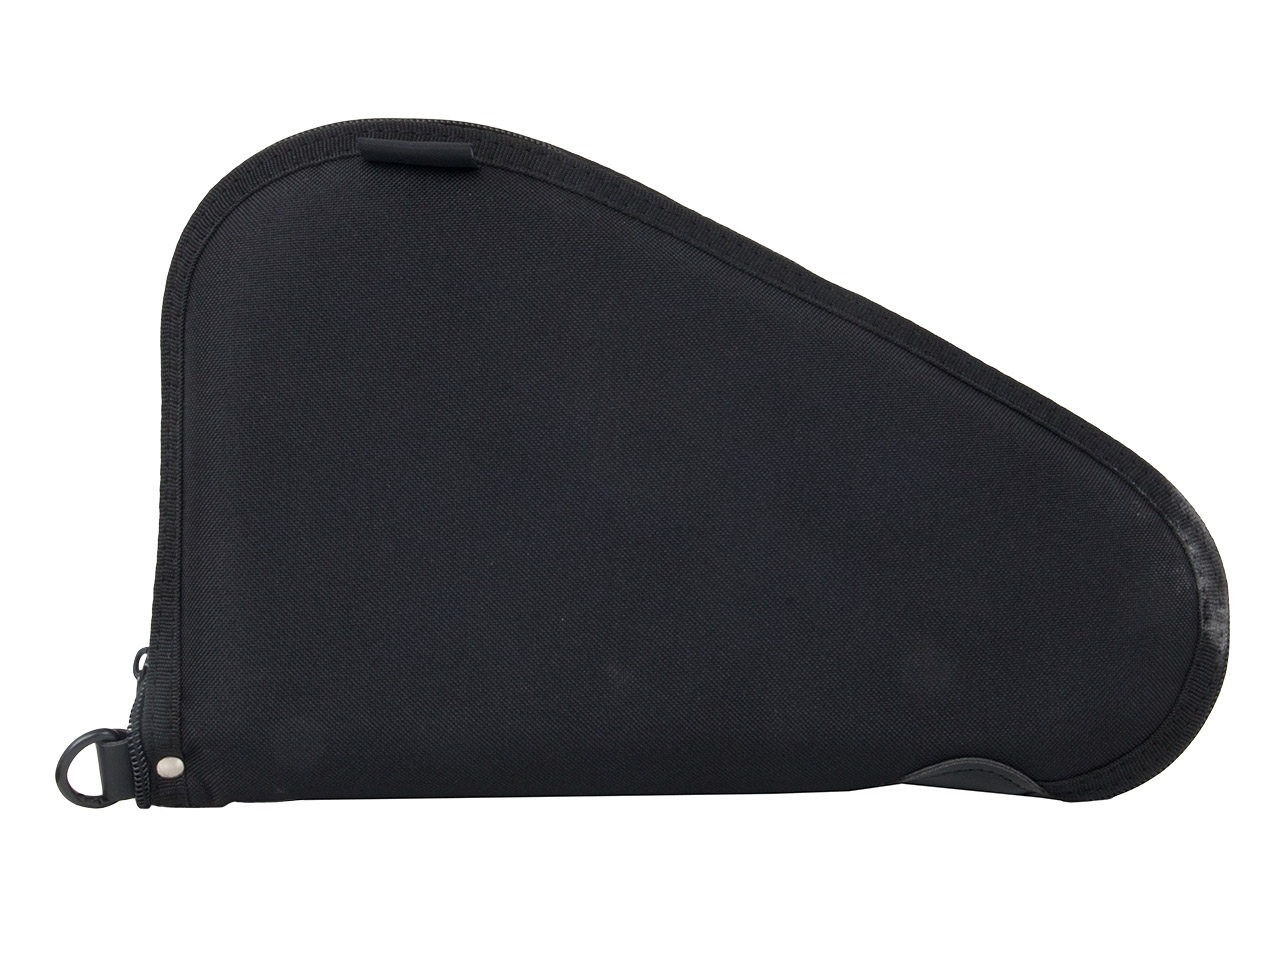 Pistolenfutteral Pistolentasche Transporttasche Mil-Tec 27 x 15 cm abschließbar für kleine Pistolen und Revolver schwarz